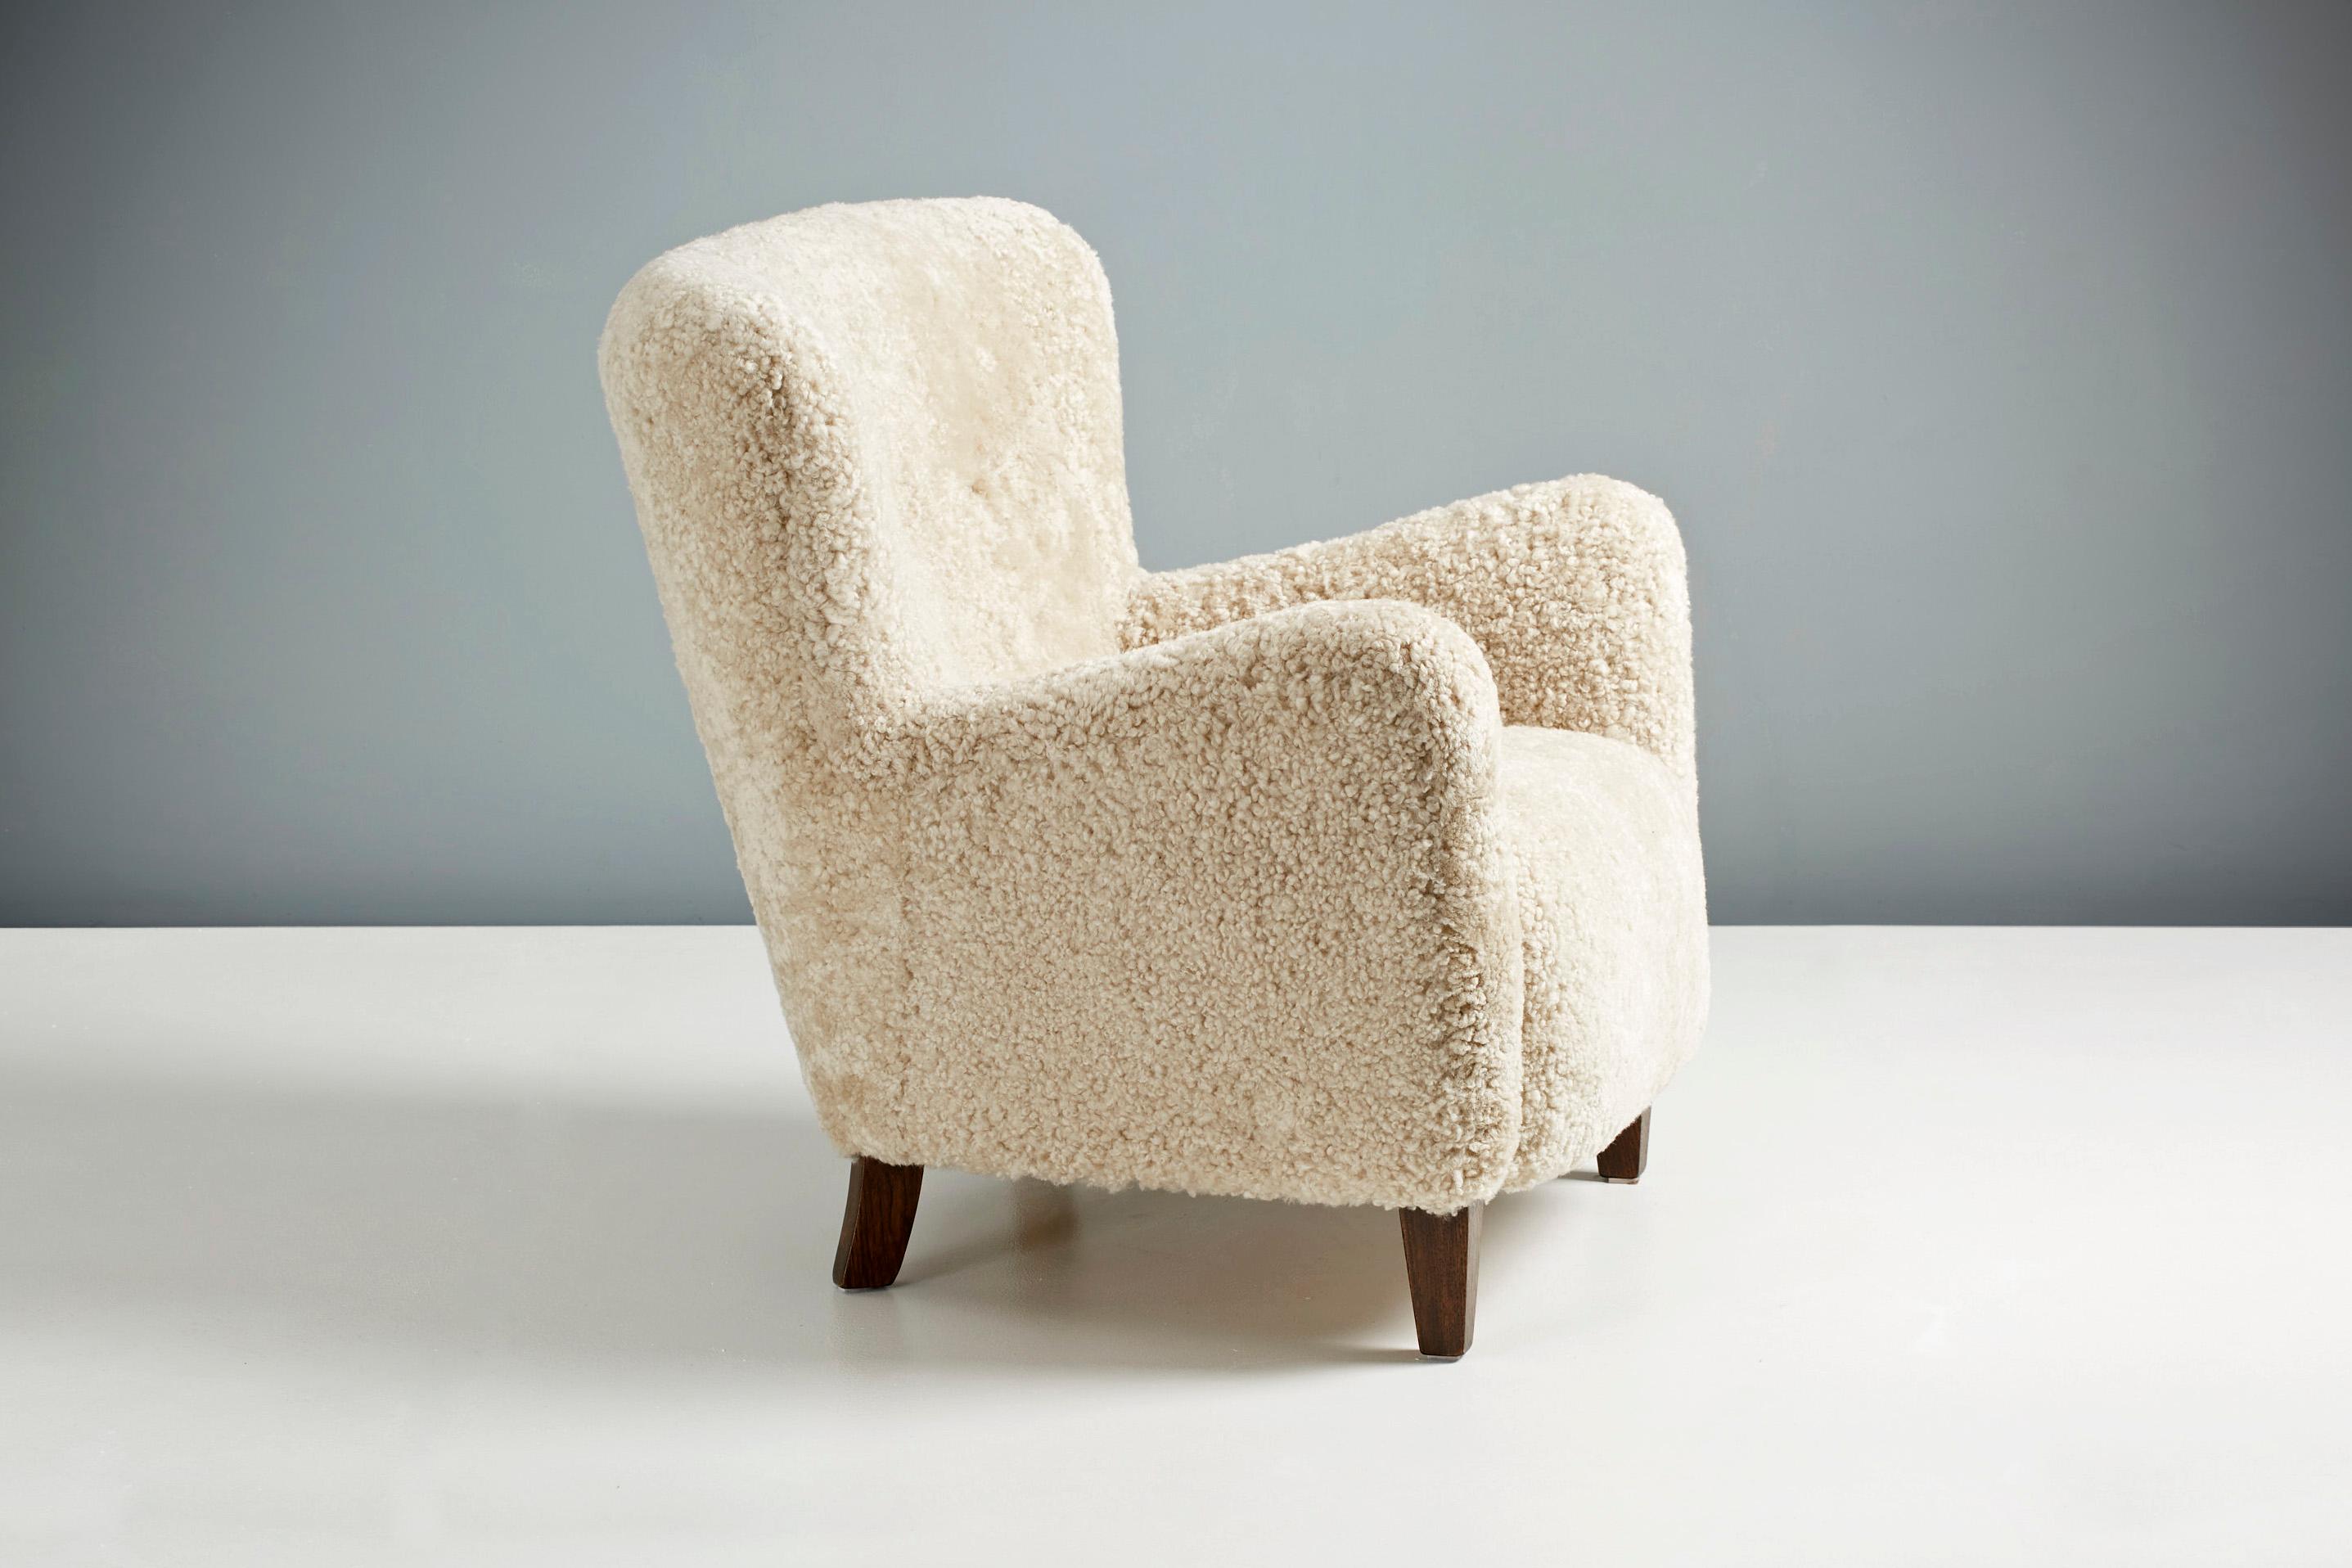 Design/One - paire de chaises longues To-Ryo fabriquées sur mesure.

La chaise To-Ryo a été développée et produite dans nos ateliers à Londres en utilisant des matériaux de la plus haute qualité. Ces exemplaires ont été recouverts d'une luxueuse